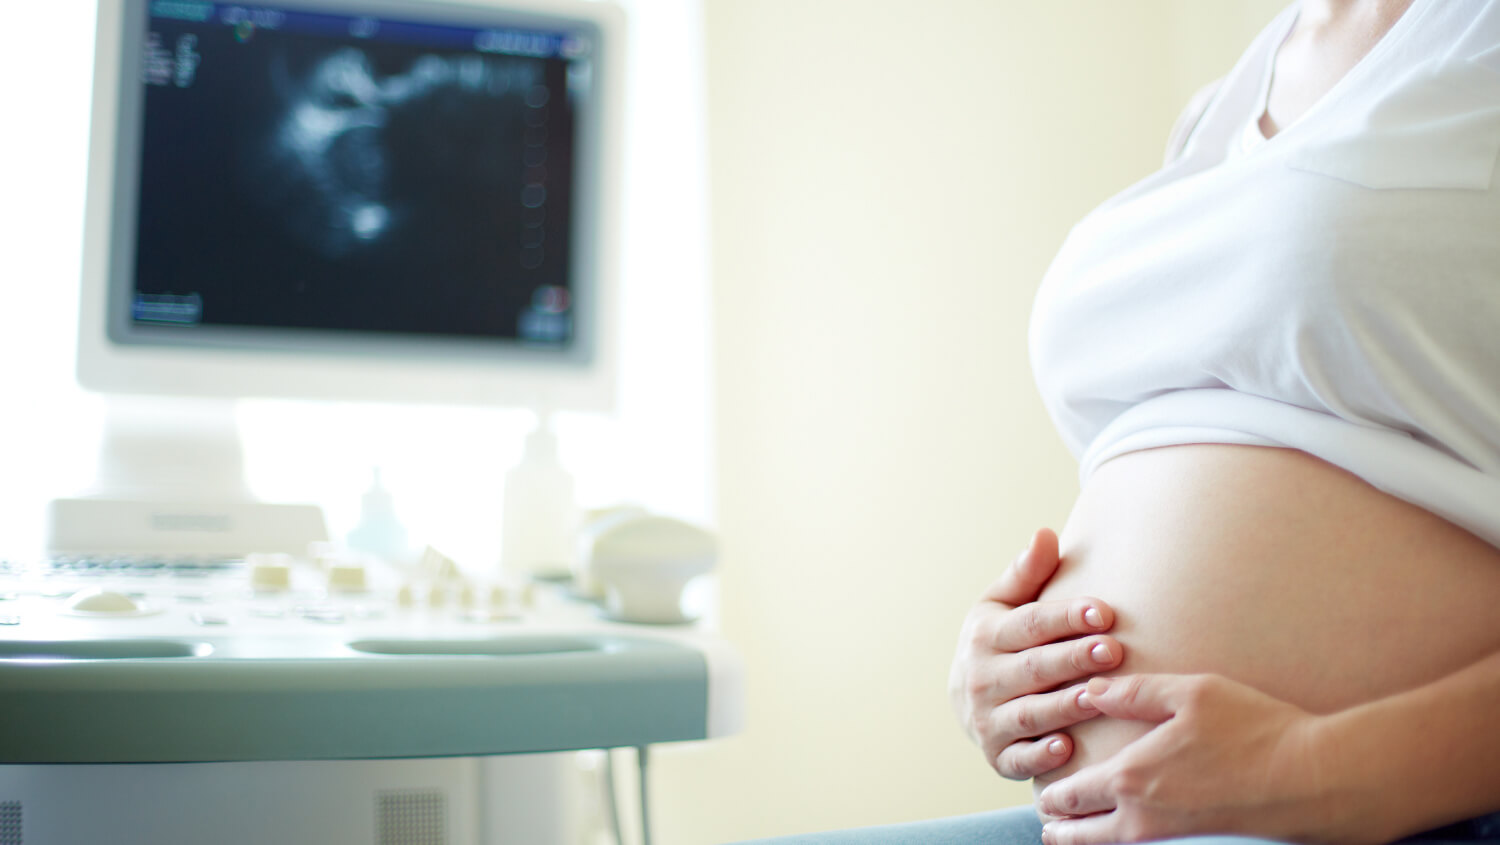 Here’s your obstetrics marketing starter kit!